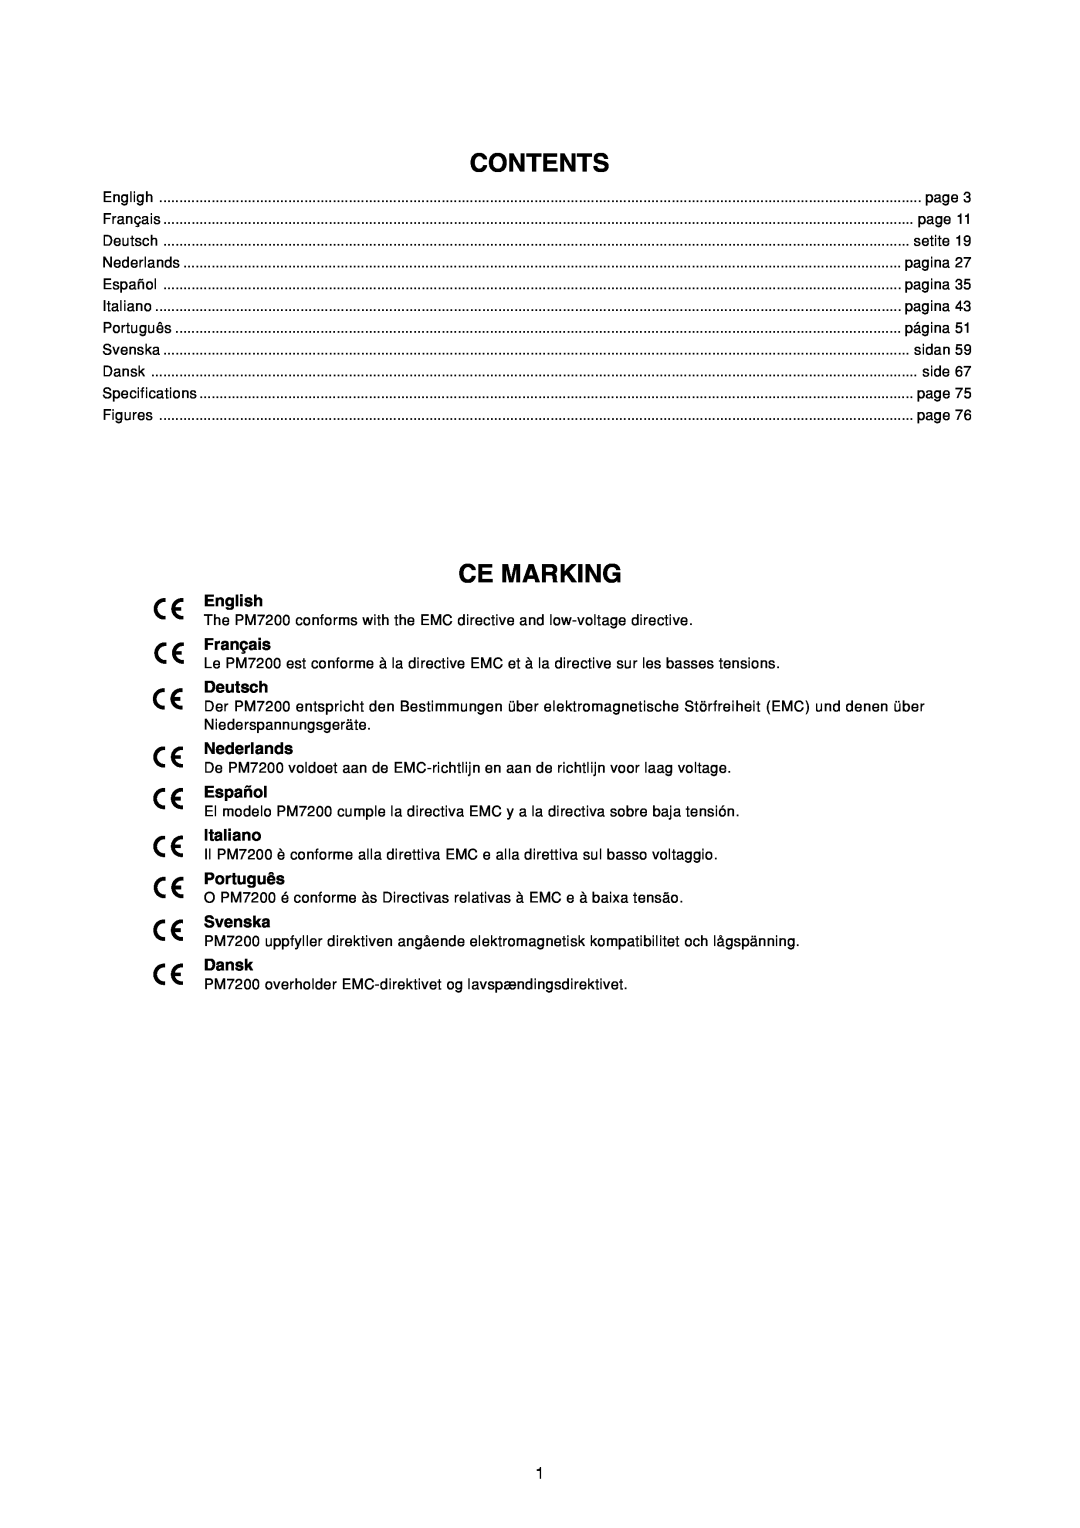 Marantz PM7200 manual Ce Marking, Contents 